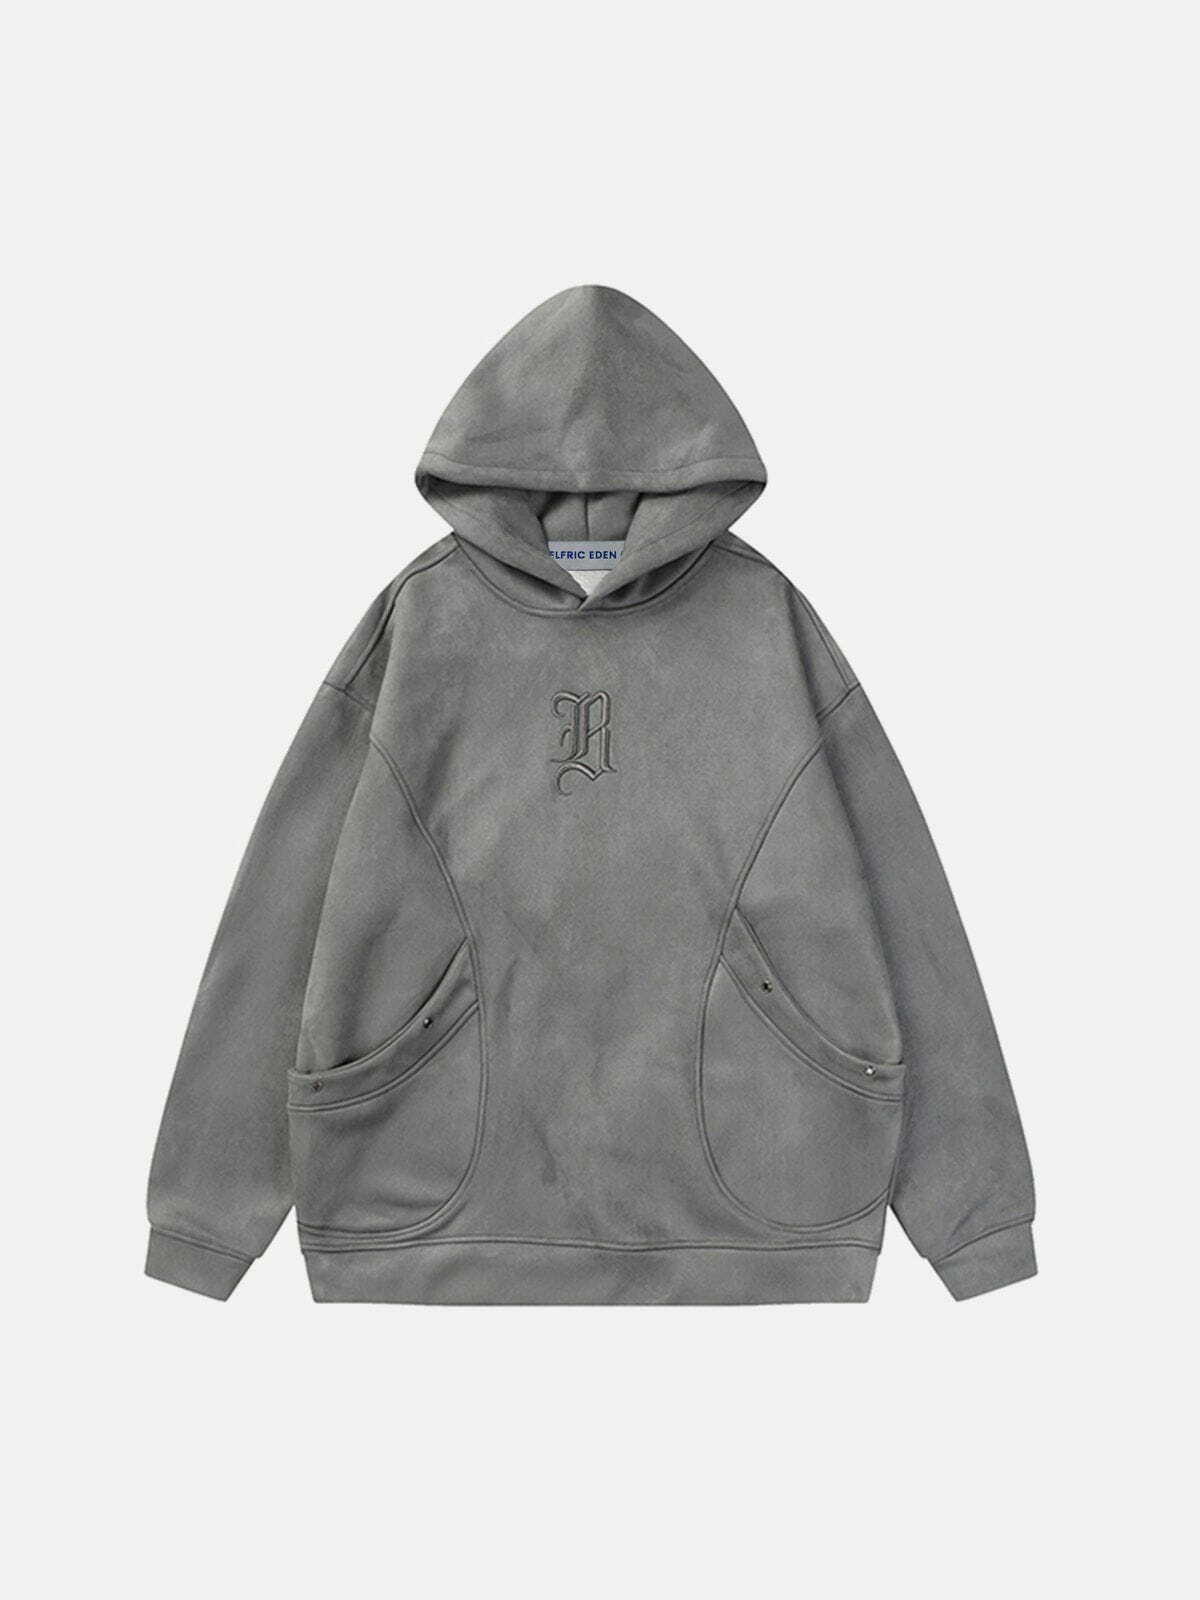 irregular pocket suede hoodie edgy & retro streetwear 8929